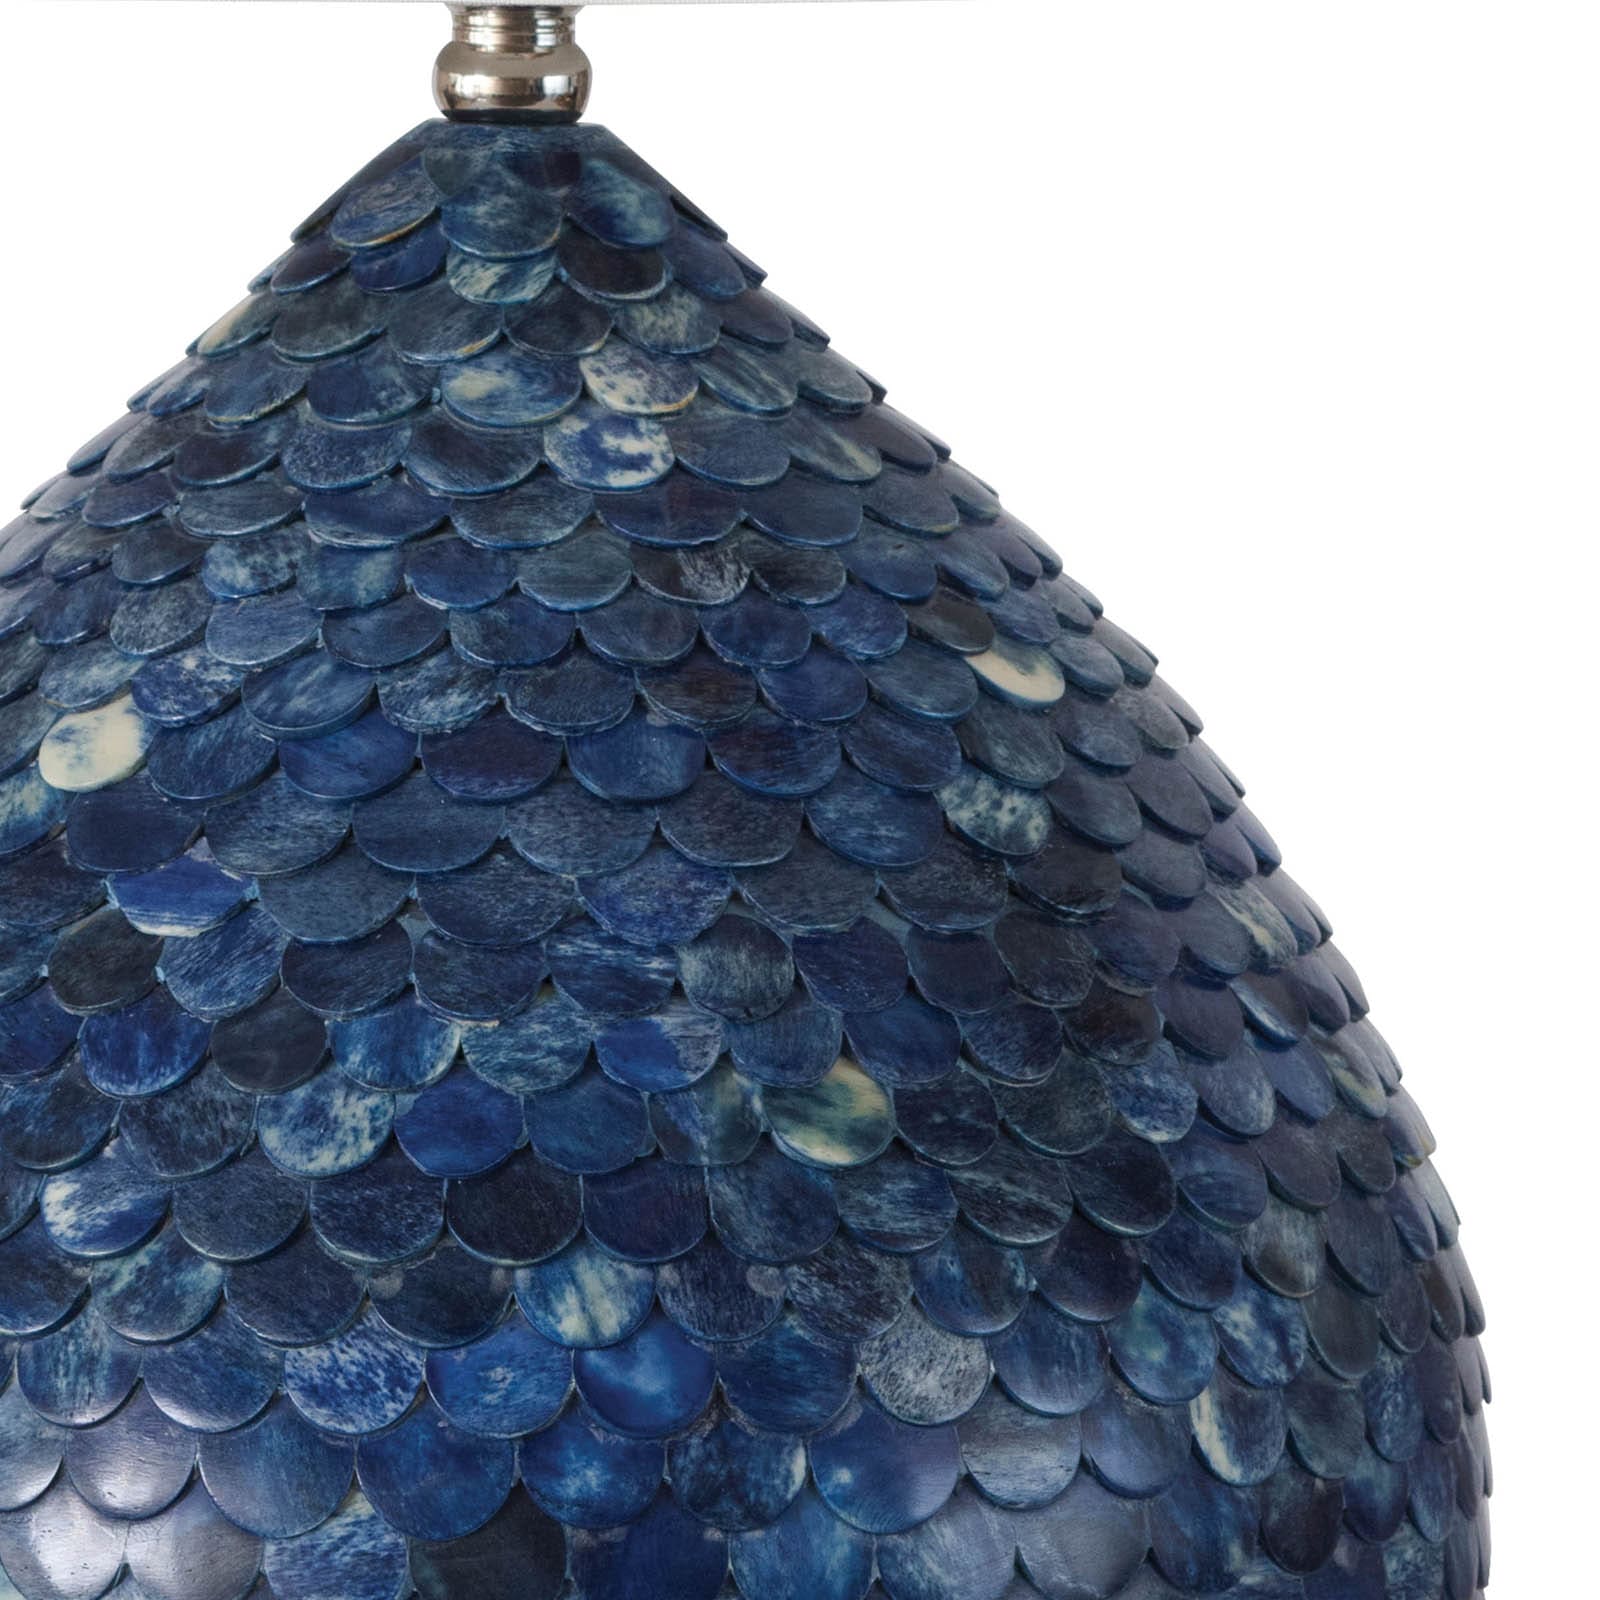 Regina Andrew Sirene Table Lamp in Blue